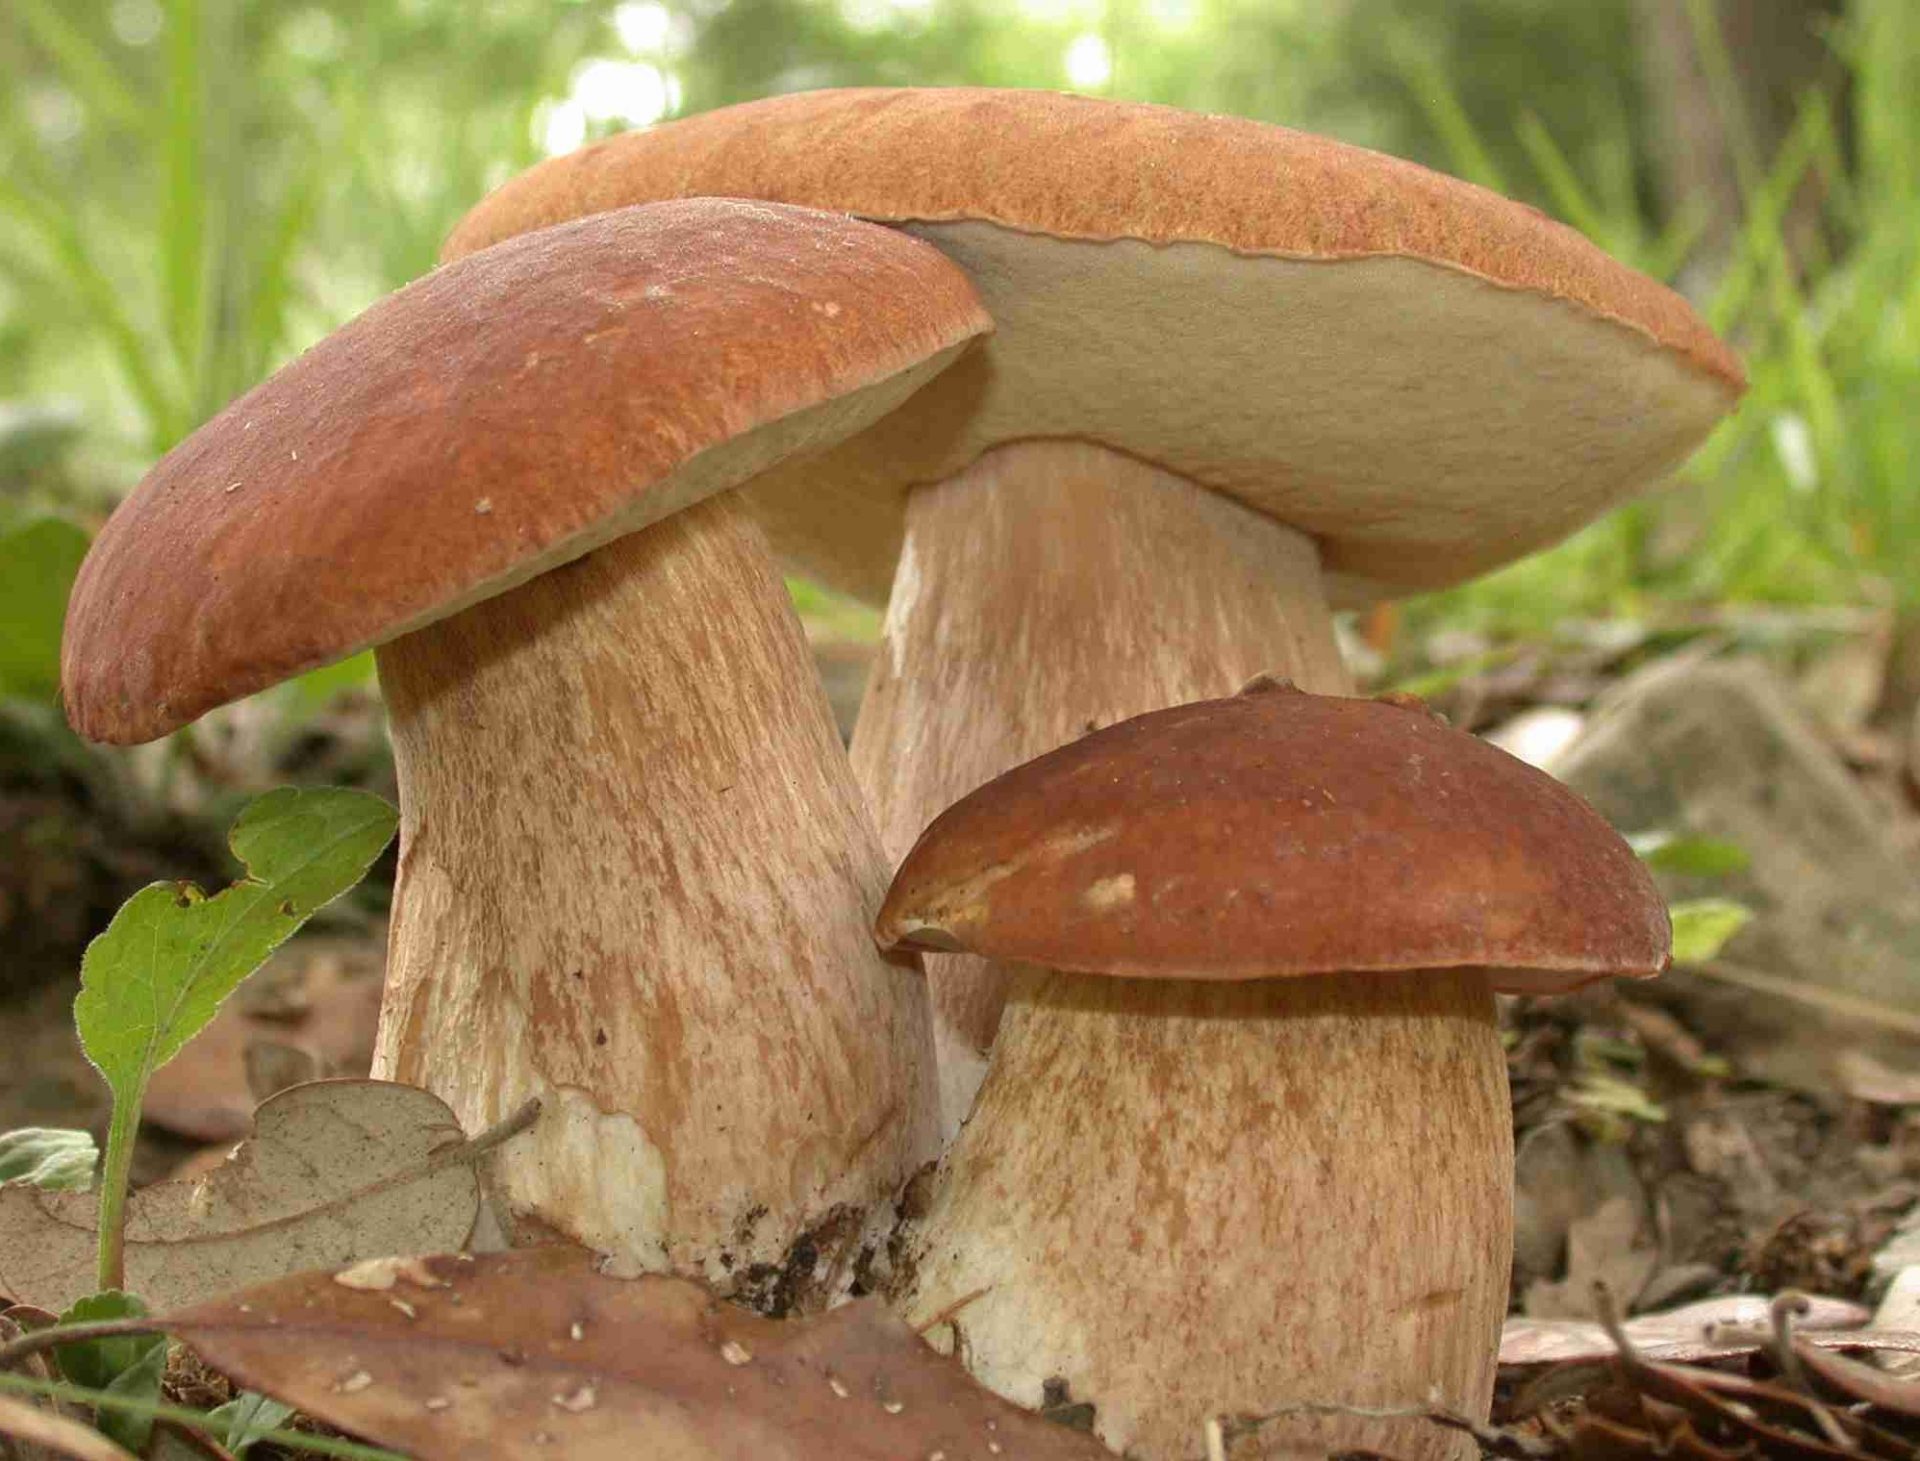 La foto dei funghi più belli 2023, al via un nuovo concorso per i nostri lettori